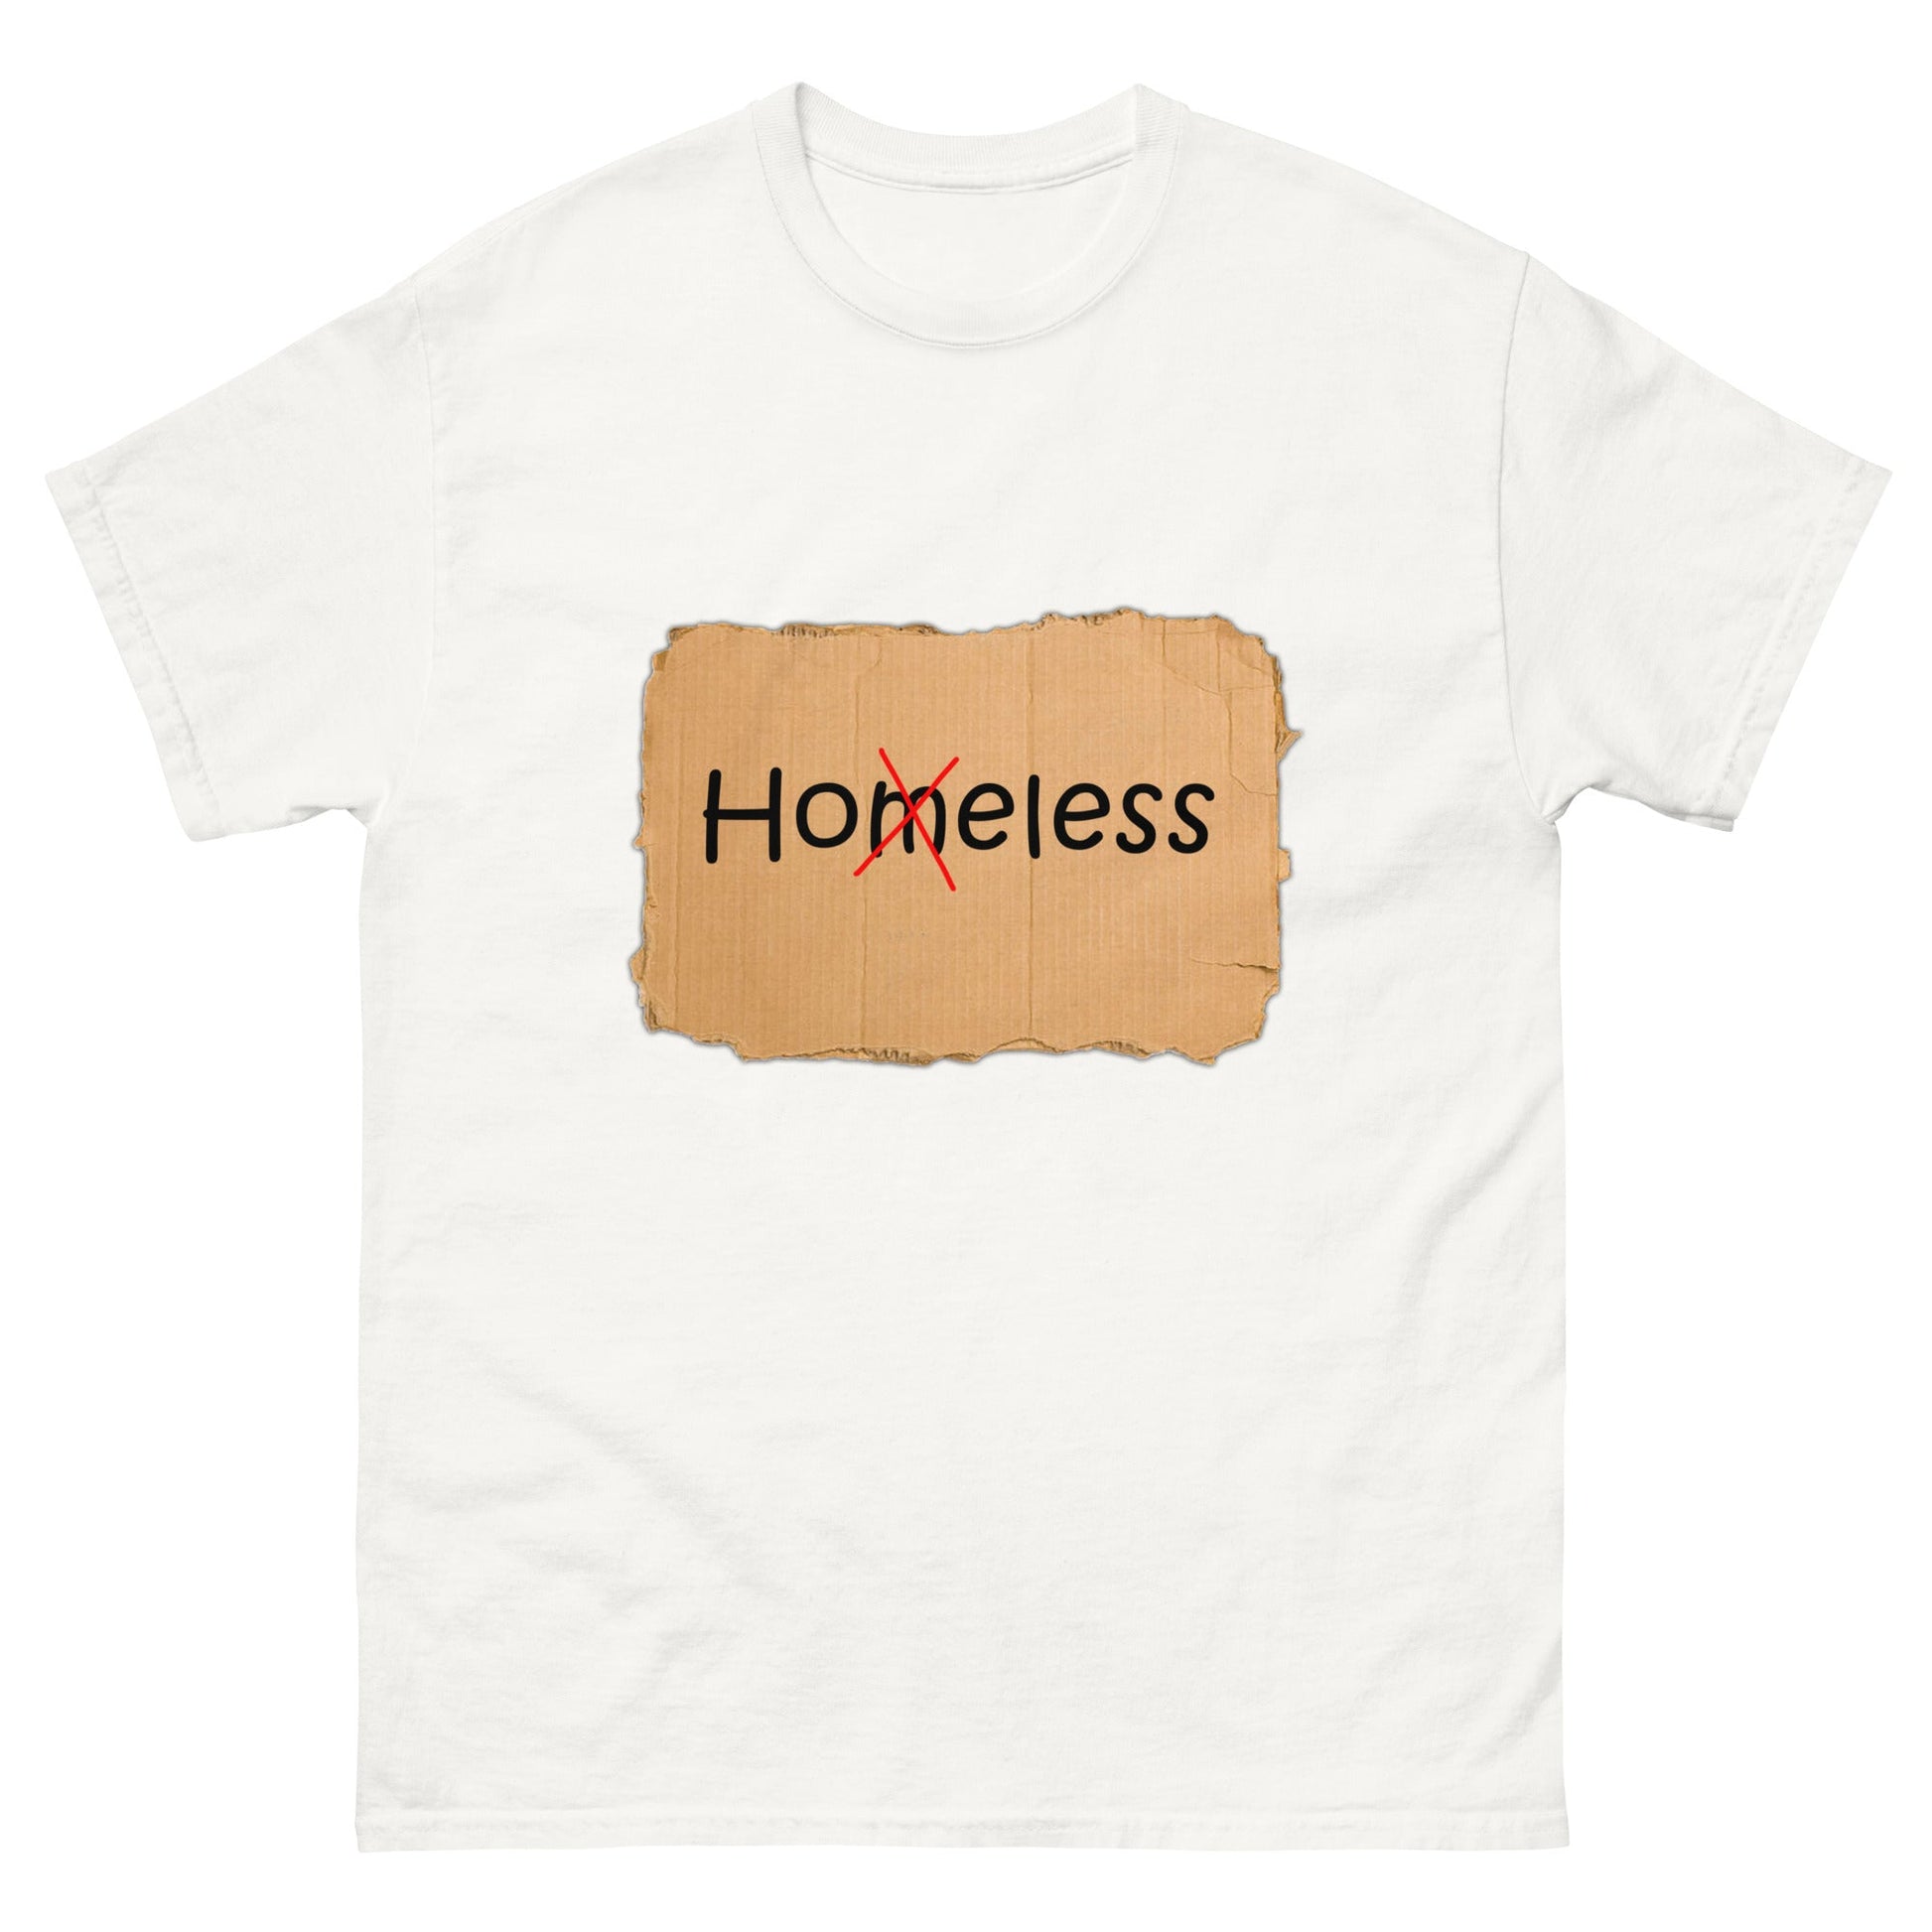 HOELESS - HardShirts